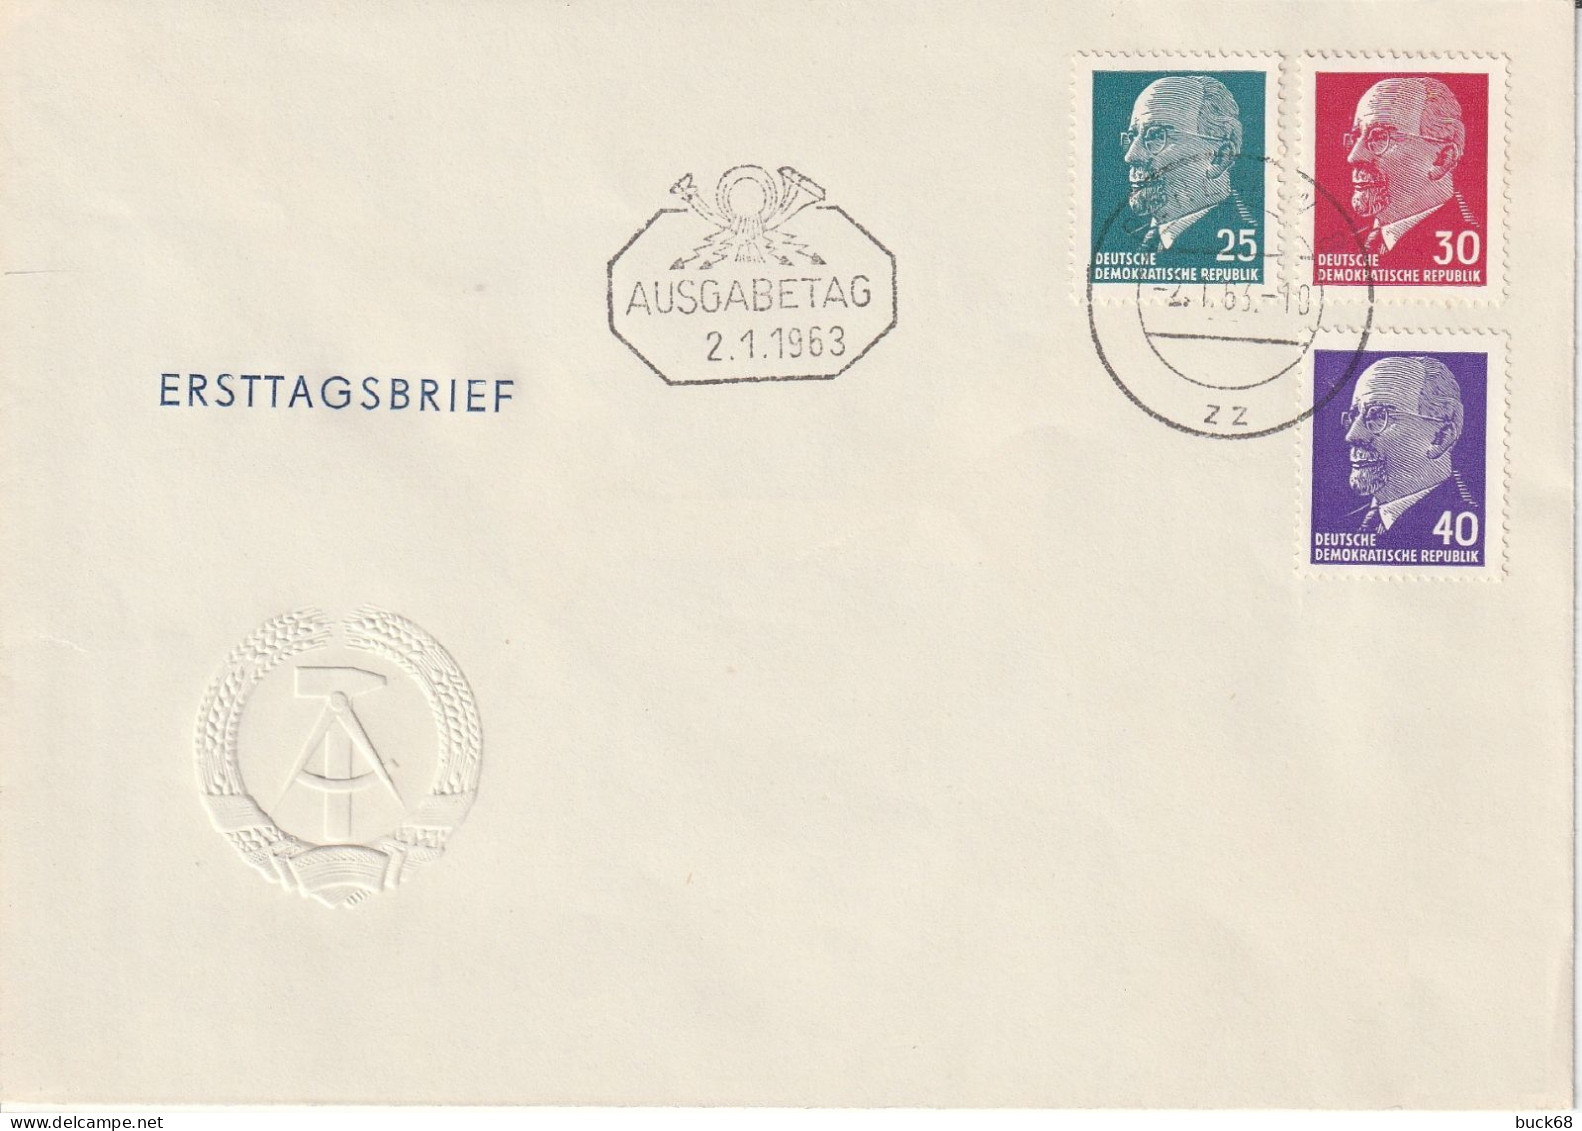 ALLEMAGNE GERMANY RDA DDR  564A 564B 564C FDC Ausgabetag 2.1.1963 - 1950-1970